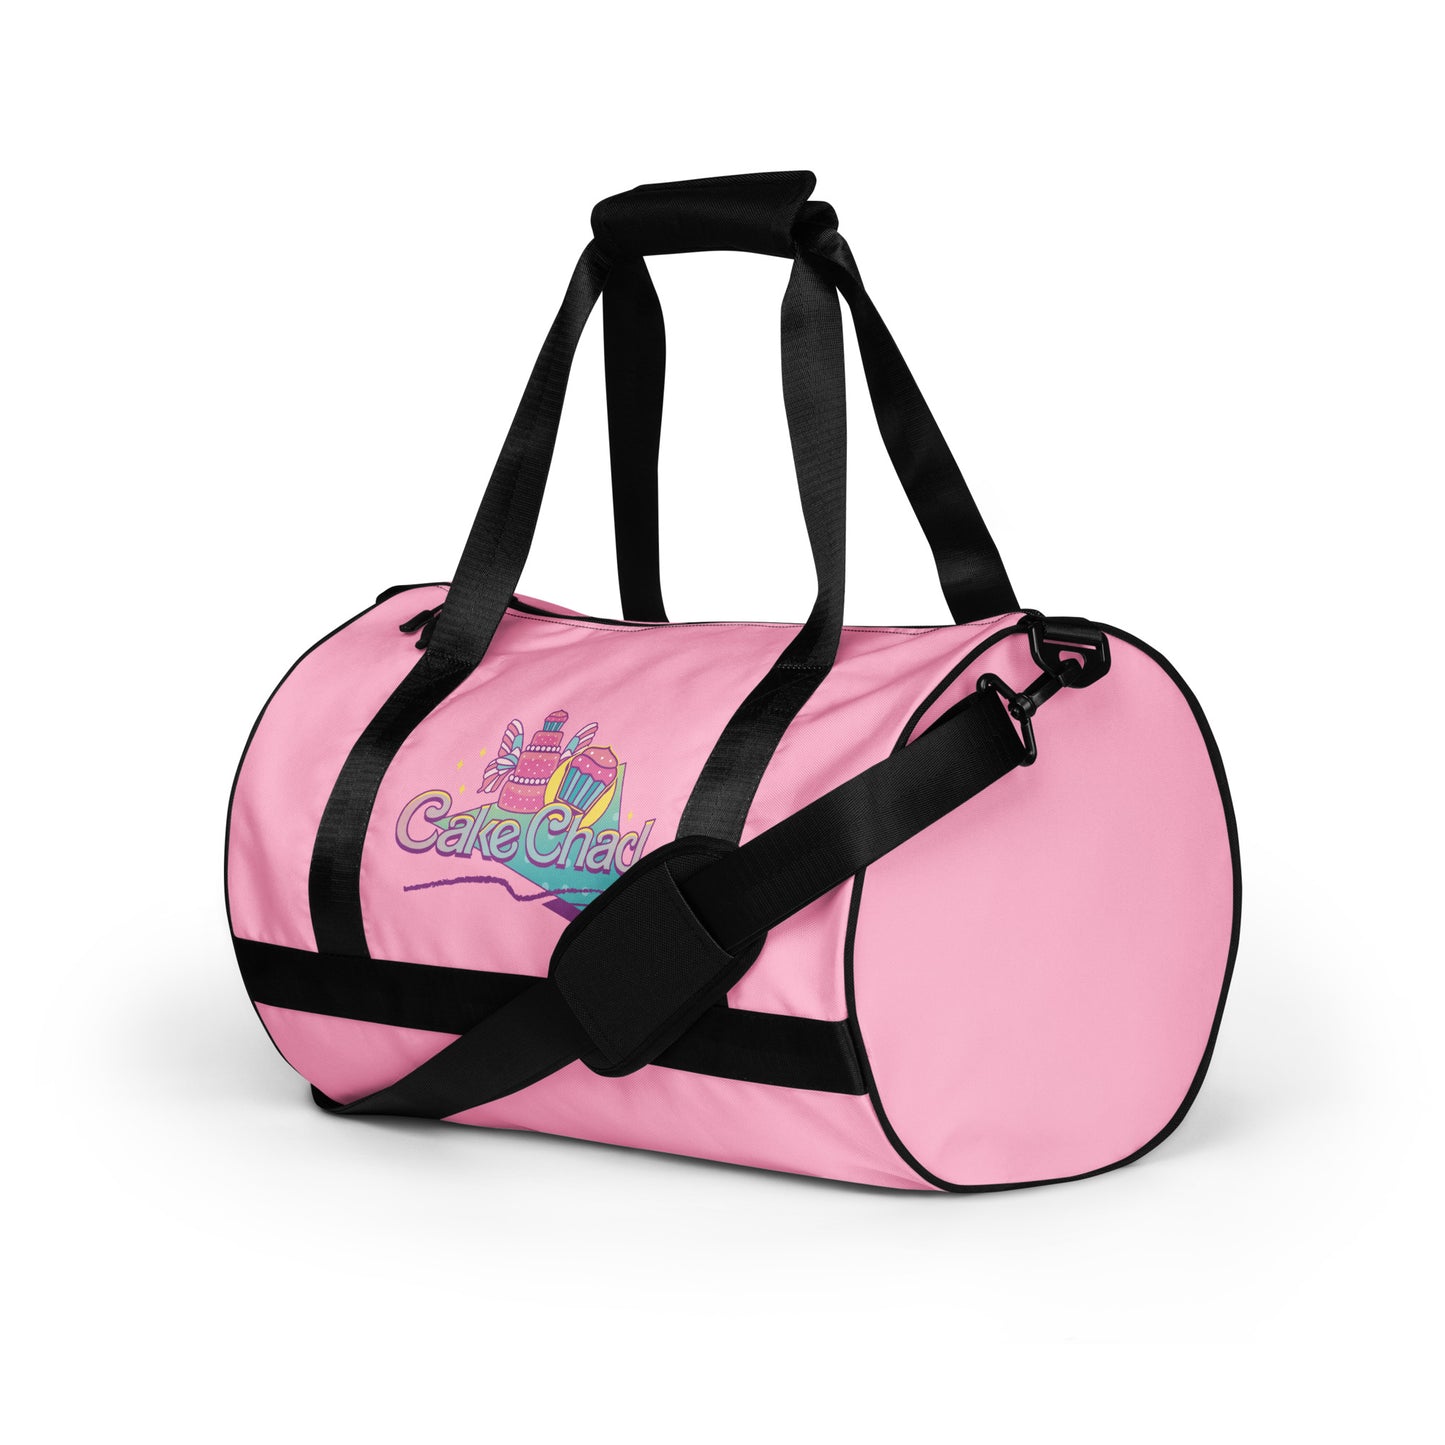 Cake Chad - Gym Bag (Pink)